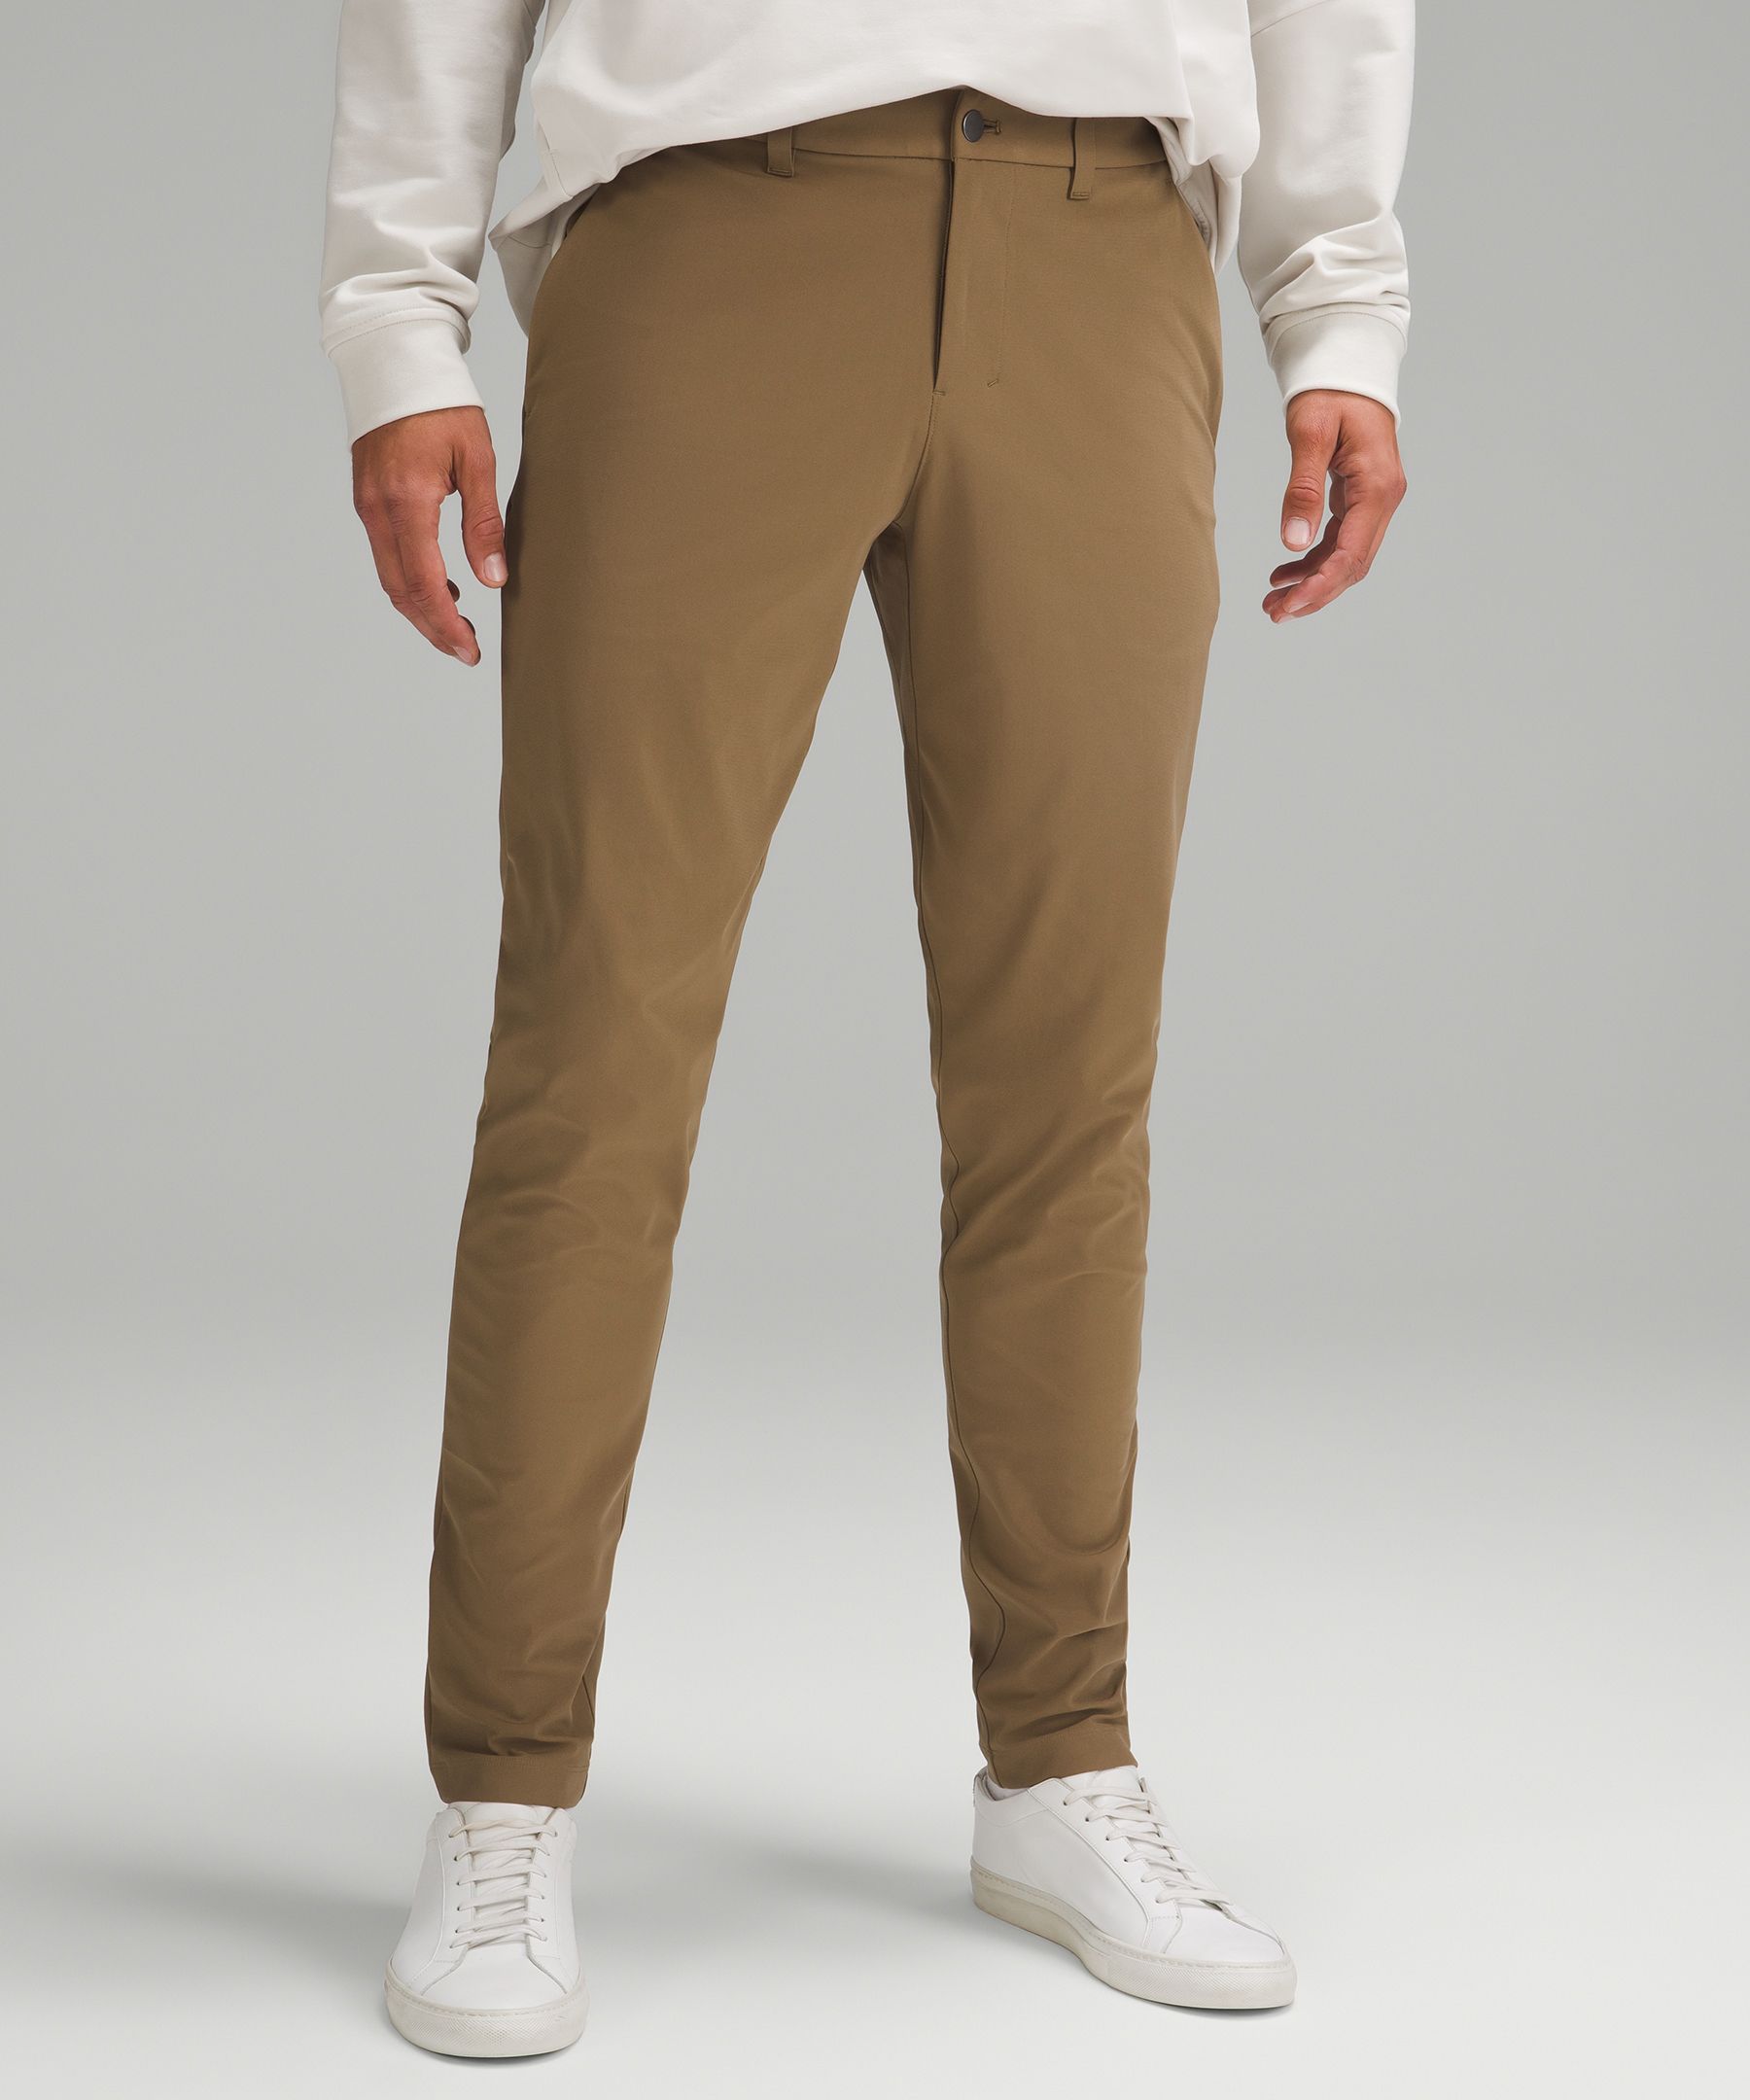 ABC Slim-Fit Trouser 32L *Warpstreme, Men's Trousers, lululemon